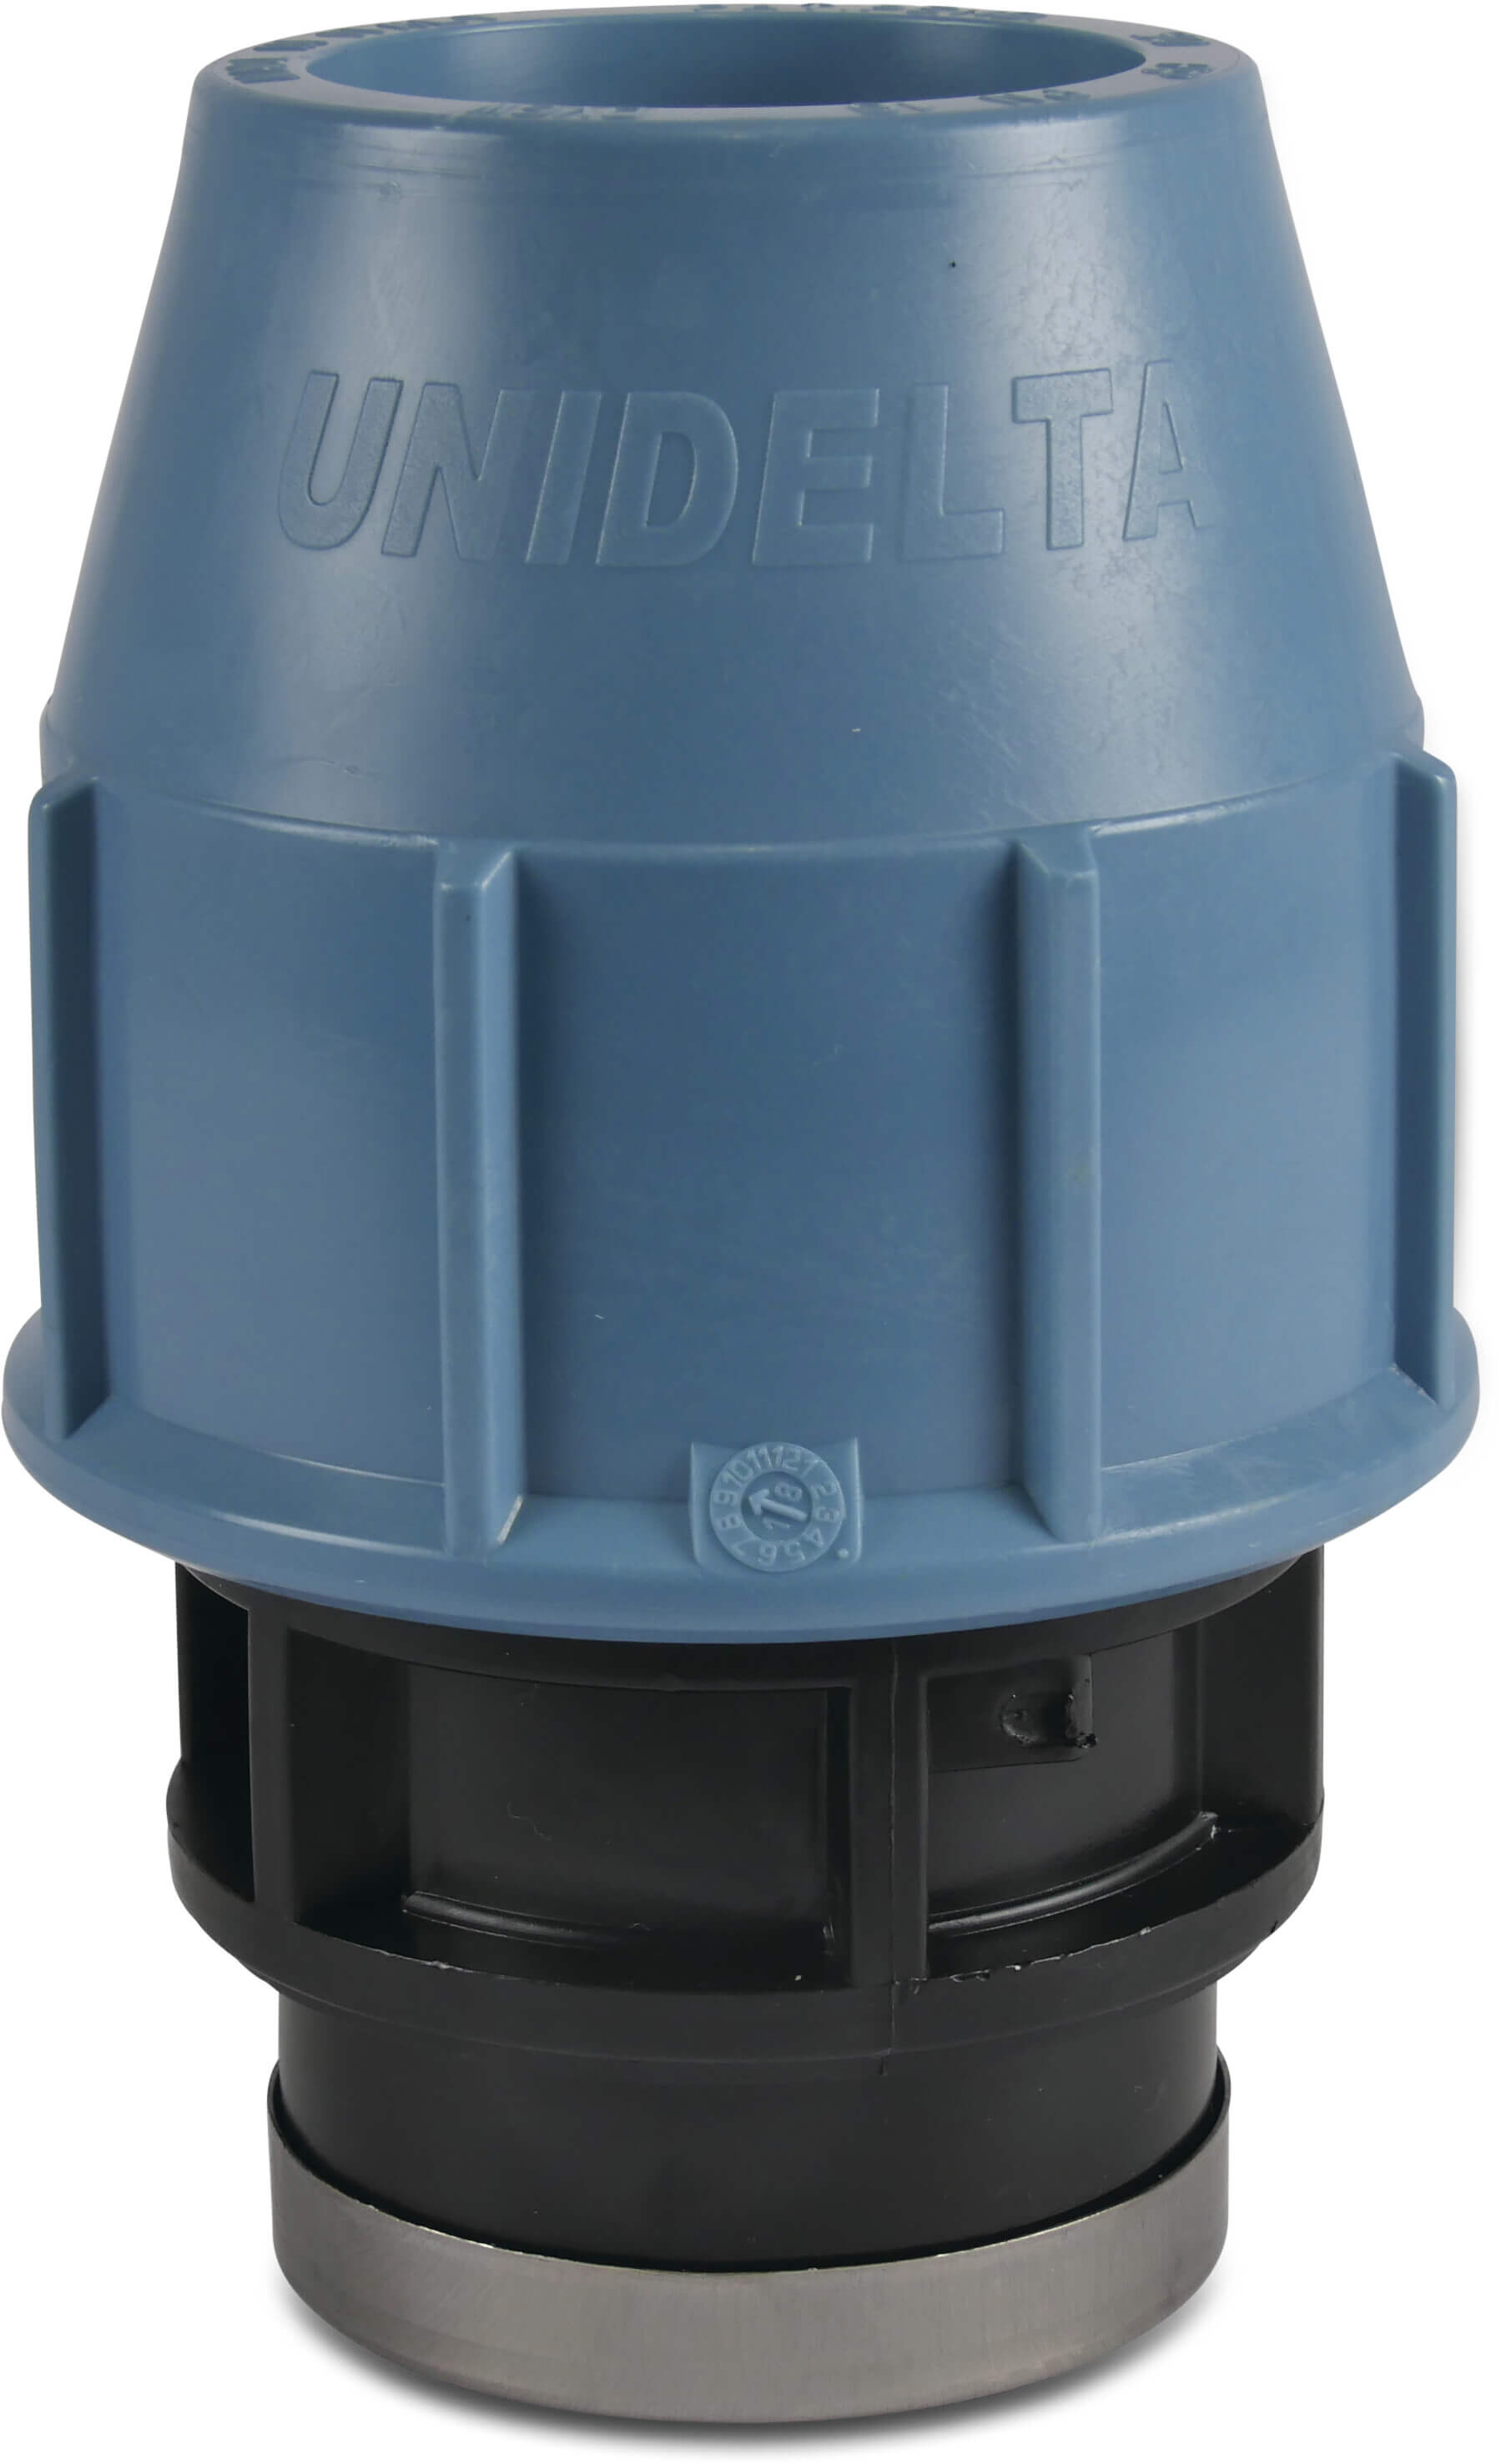 Unidelta Adaptor socket PP 25 mm x 3/4" compression x female thread 16bar black/blue DVGW/KIWA/WRAS